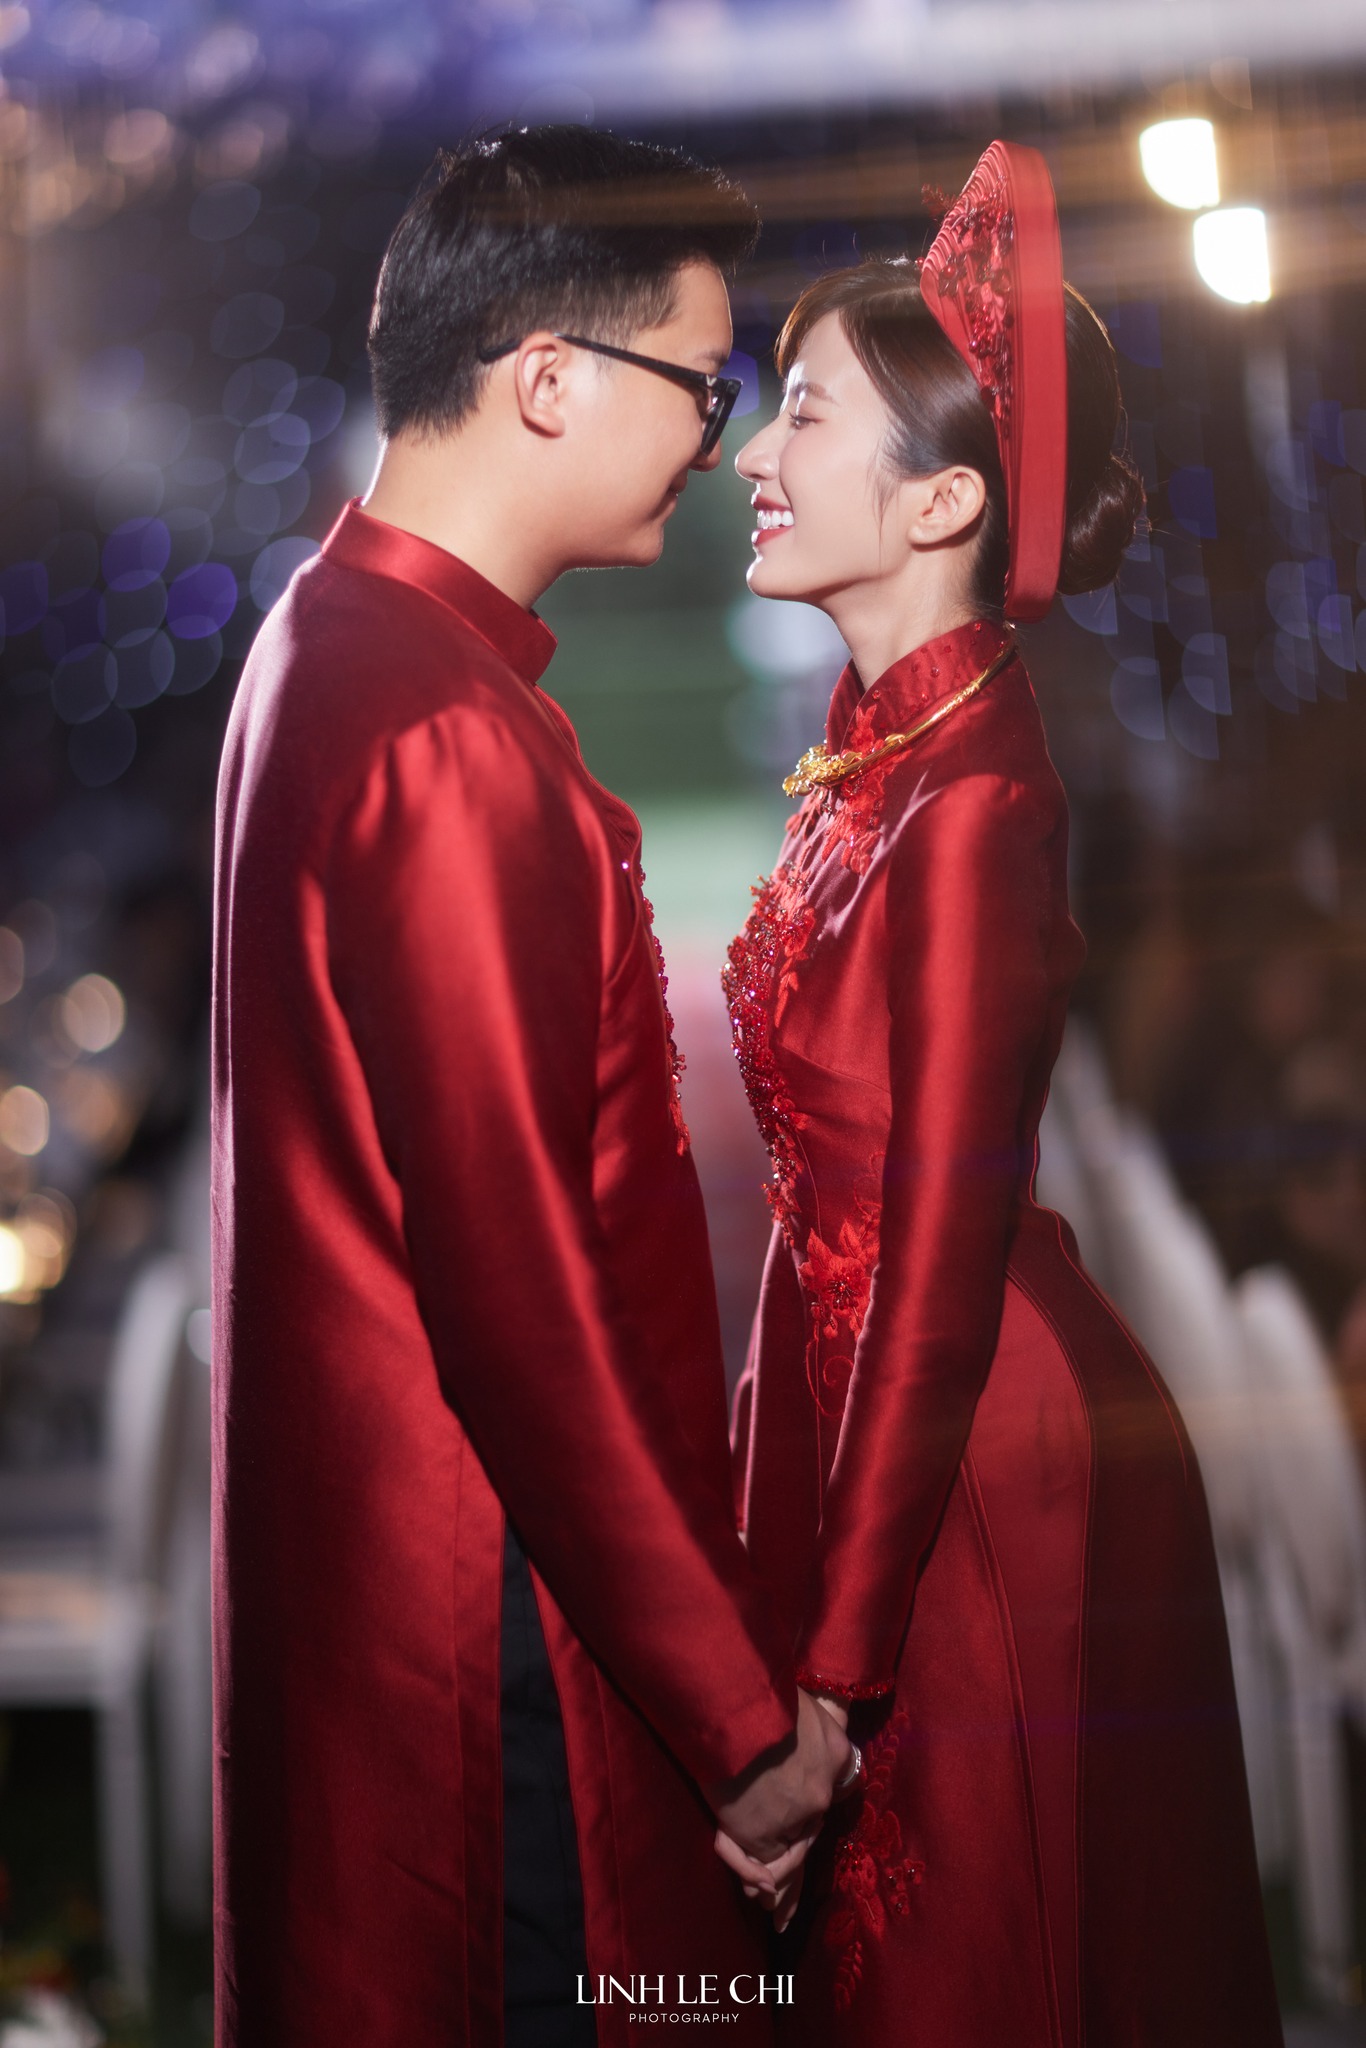 Lễ cưới ngập sắc đỏ của diễn viên Ngọc Huyền và cháu trai NSUT Chí Trung, cô dâu khóc nhận của hồi môn - ảnh 2